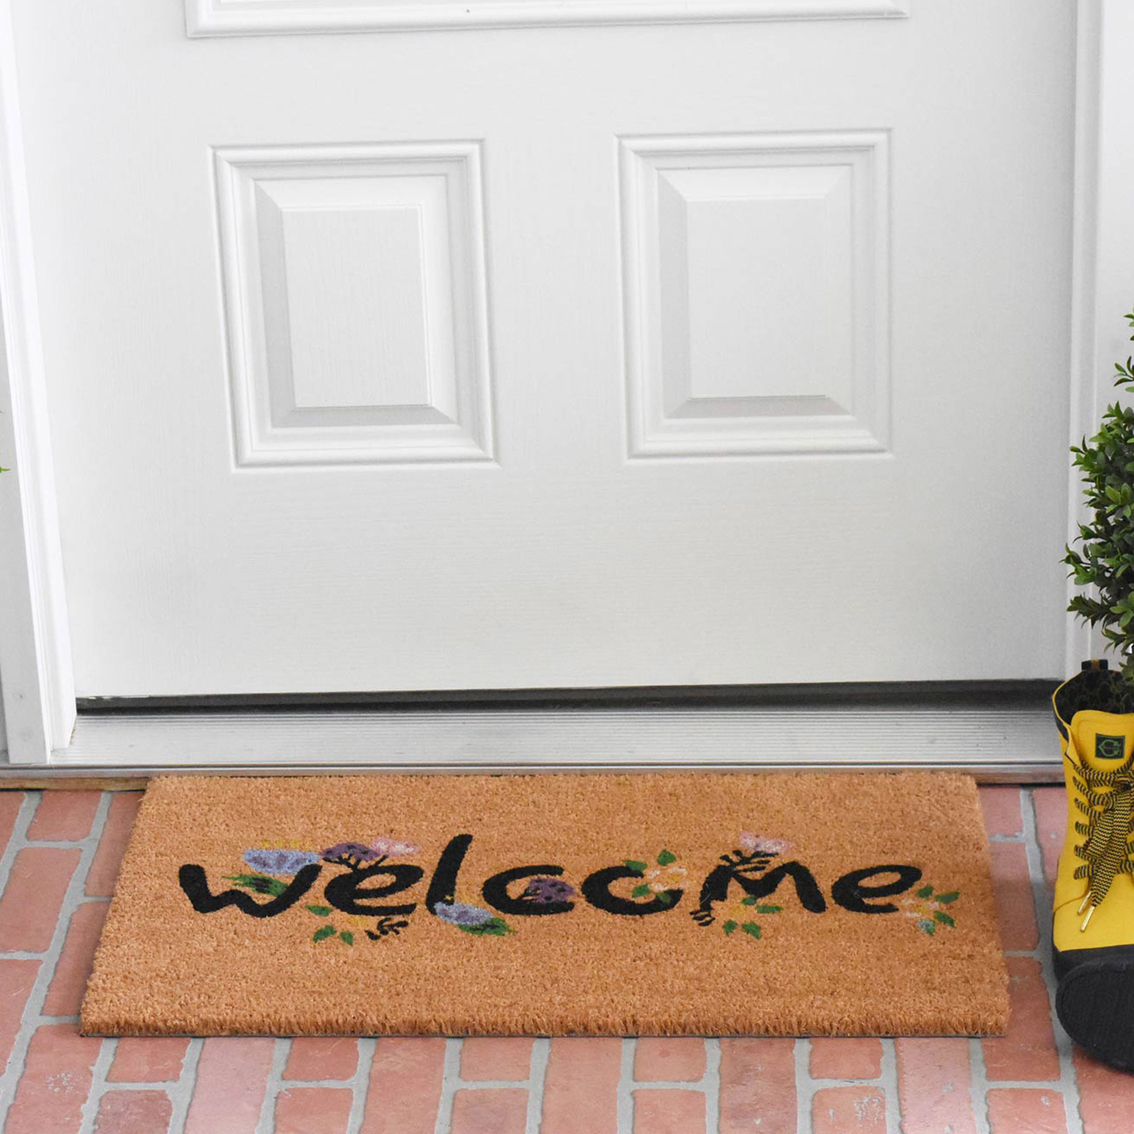 Calloway Mills 17 x 29 in. Spring Welcome Doormat - Image 3 of 5